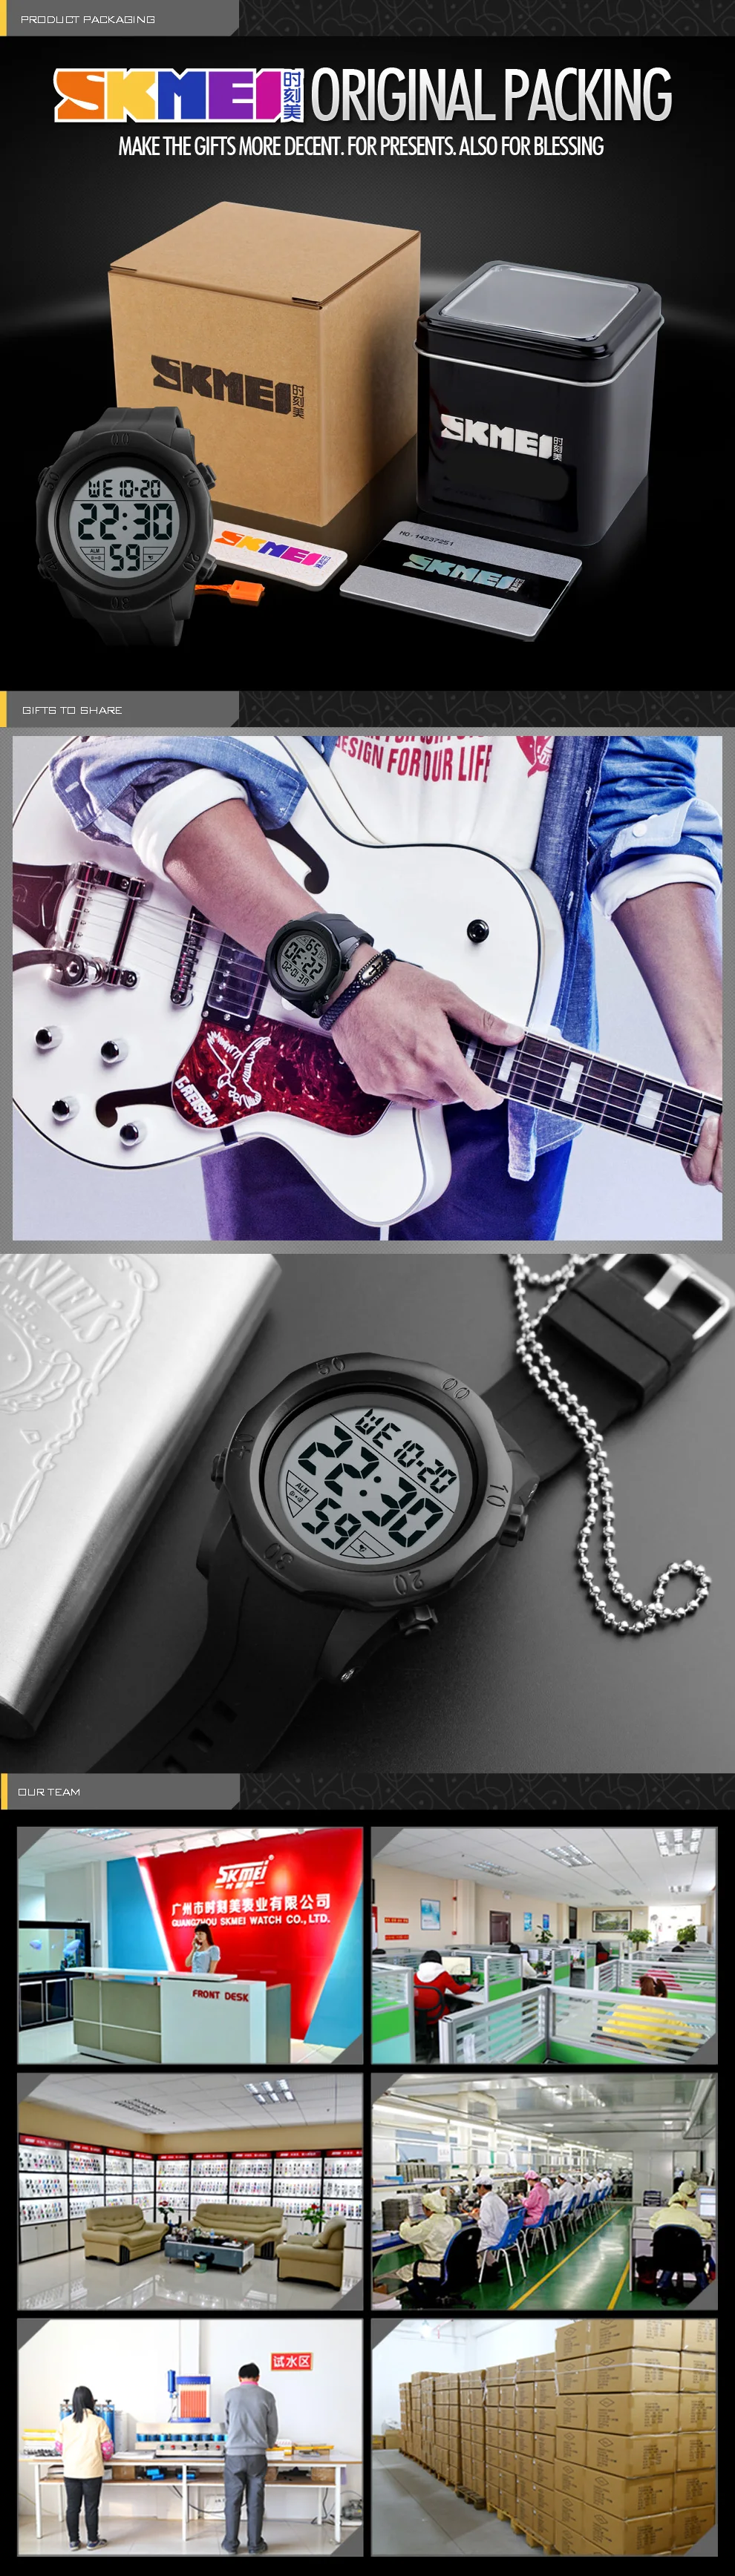 SKMEI простые спортивные часы мужские 5 бар водонепроницаемые часы будильник на неделю часы Chrono PU ремешок цифровые наручные часы Relogio Masculino 1305